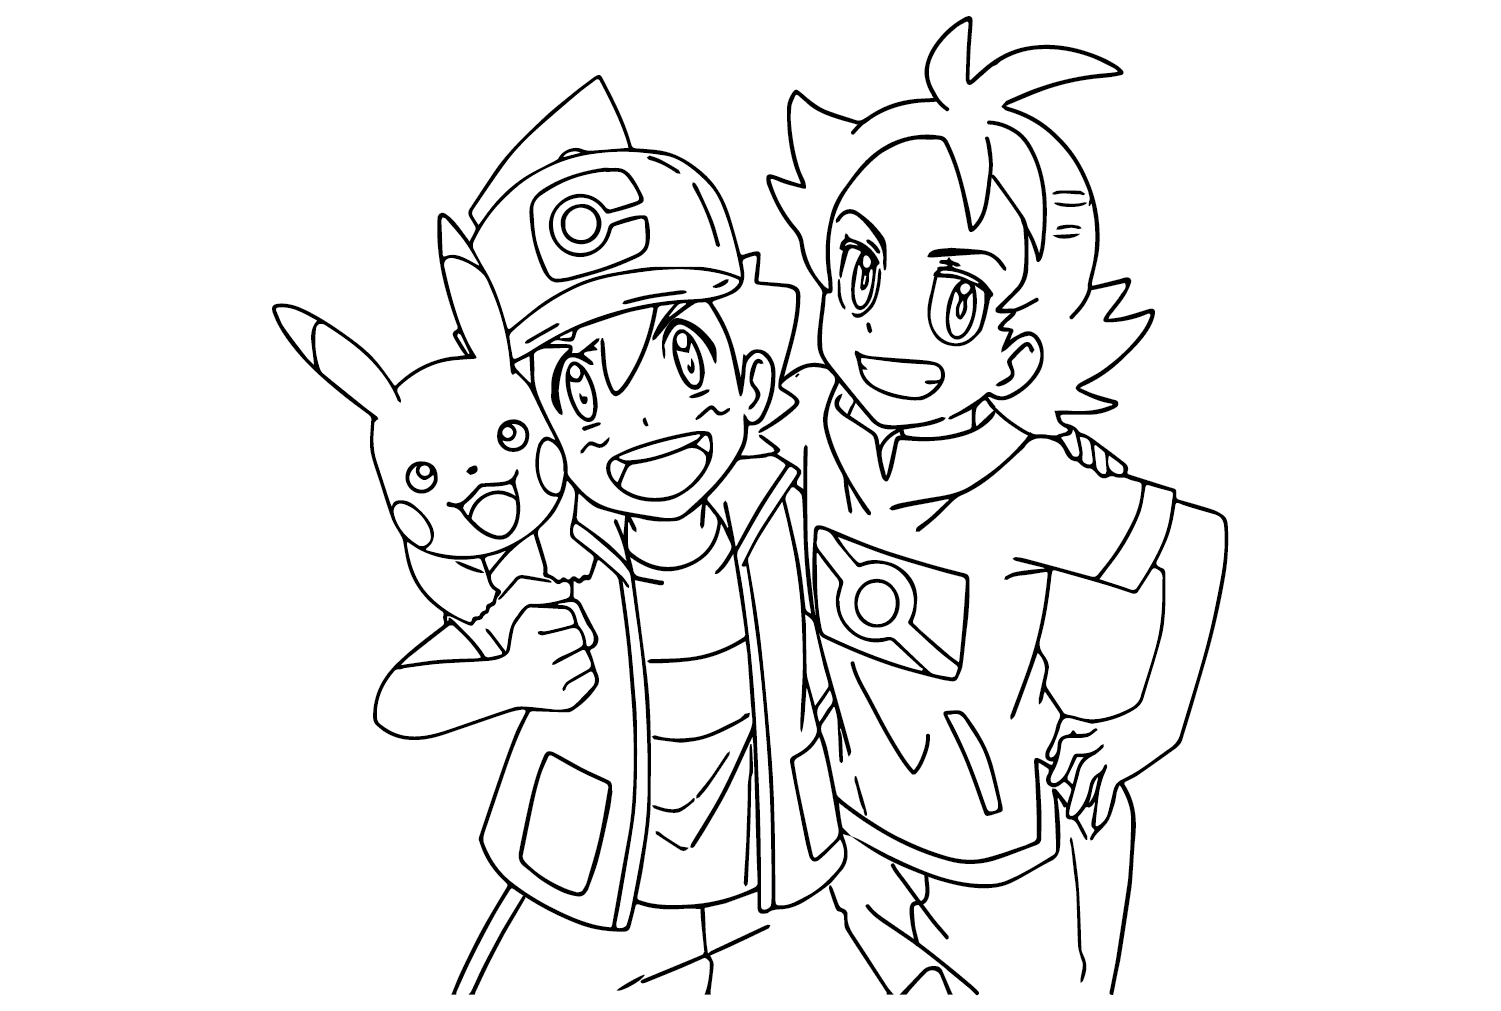 Coloriage Pokémon Ash et Goh de Ash Ketchum